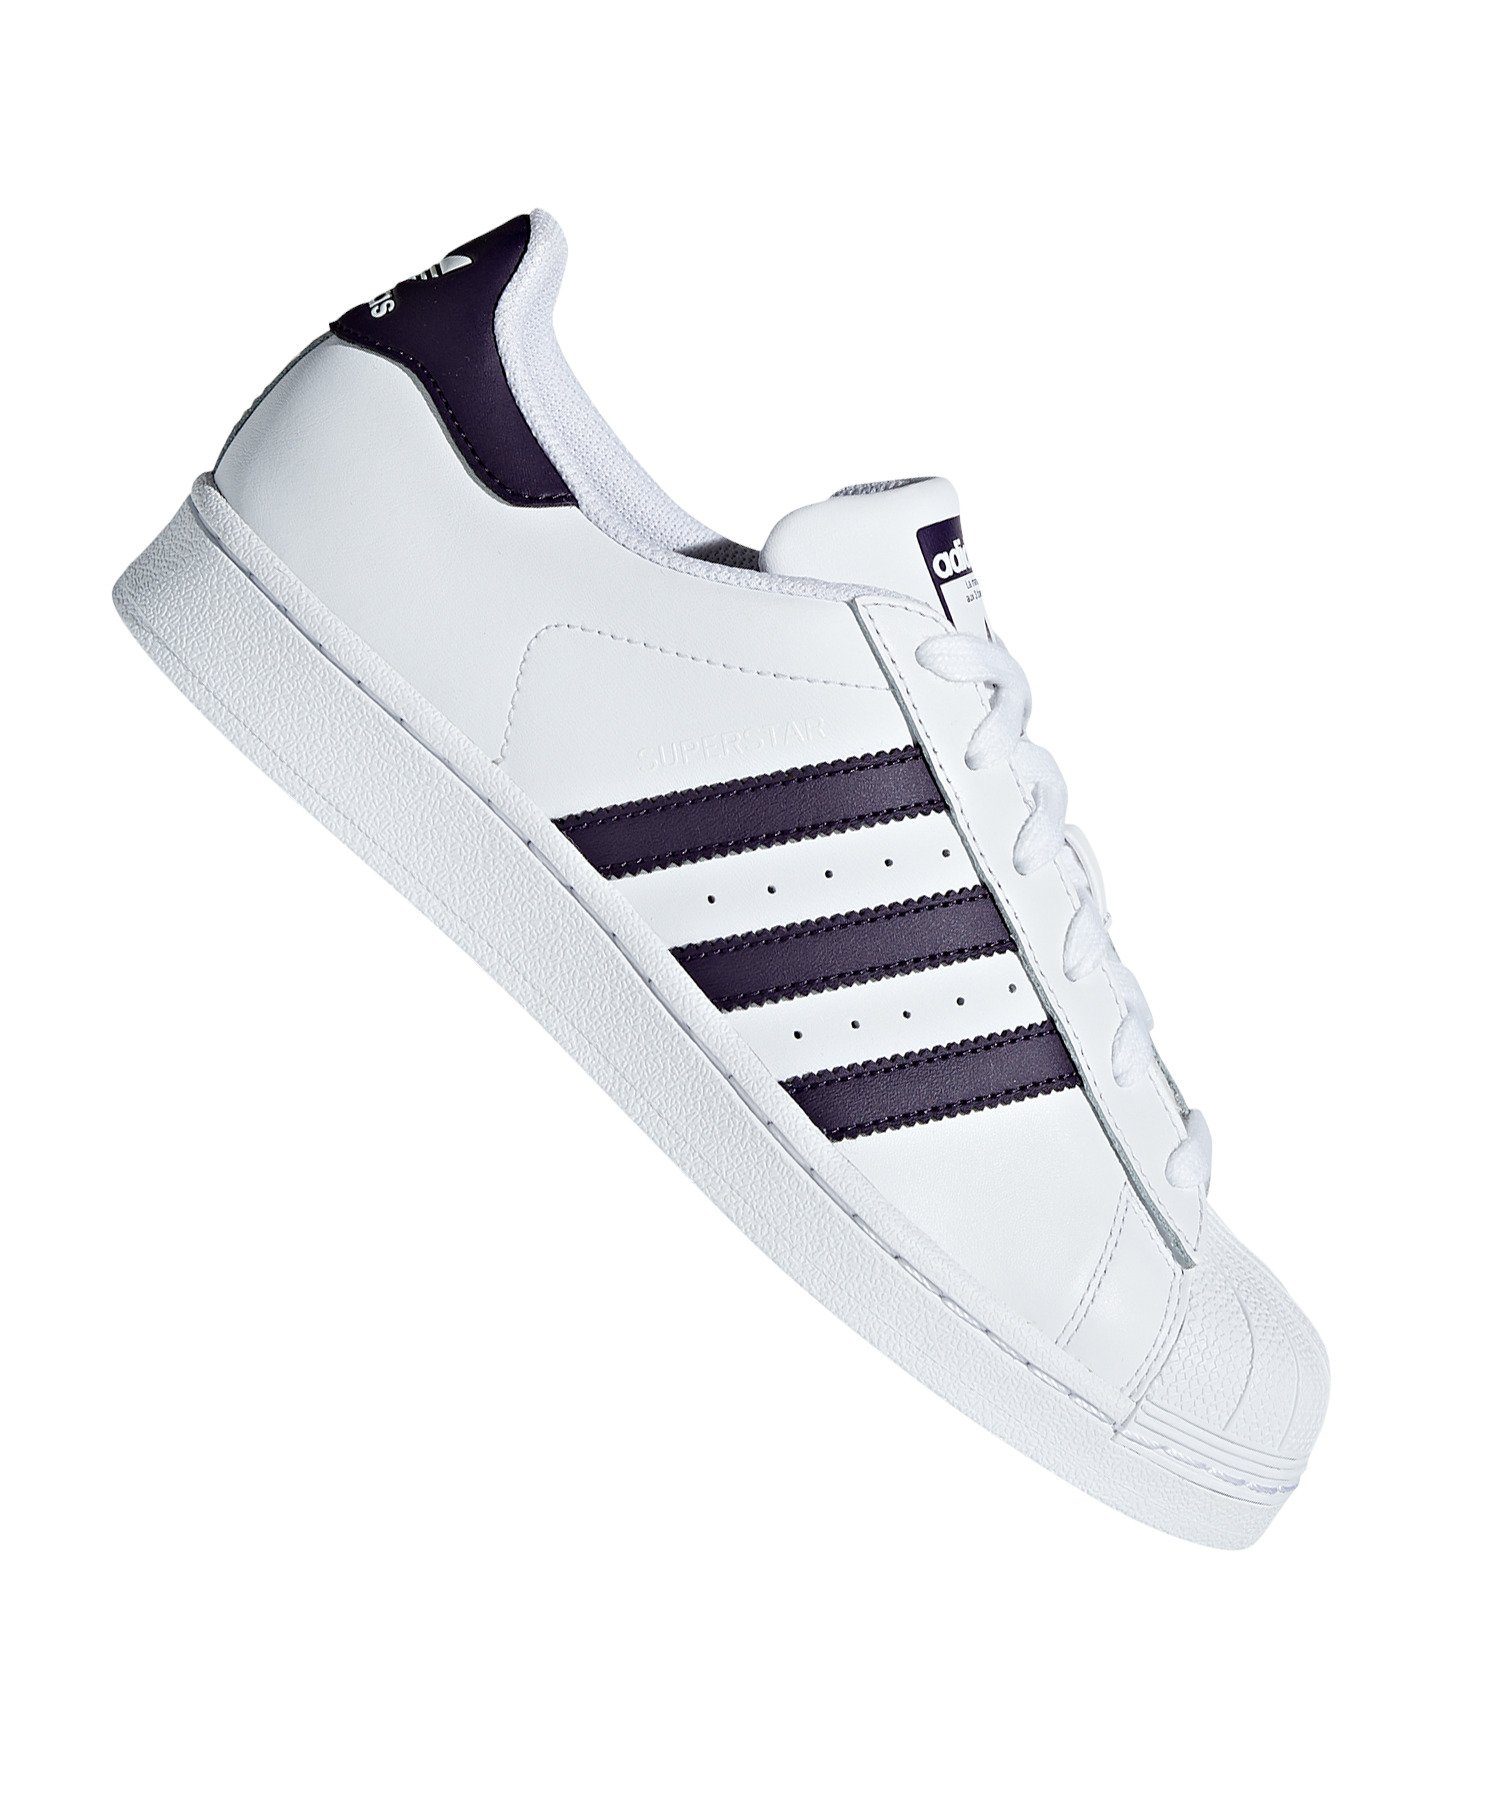 Adidas Original Superstar Sneaker Damen | ccelrecreo.com